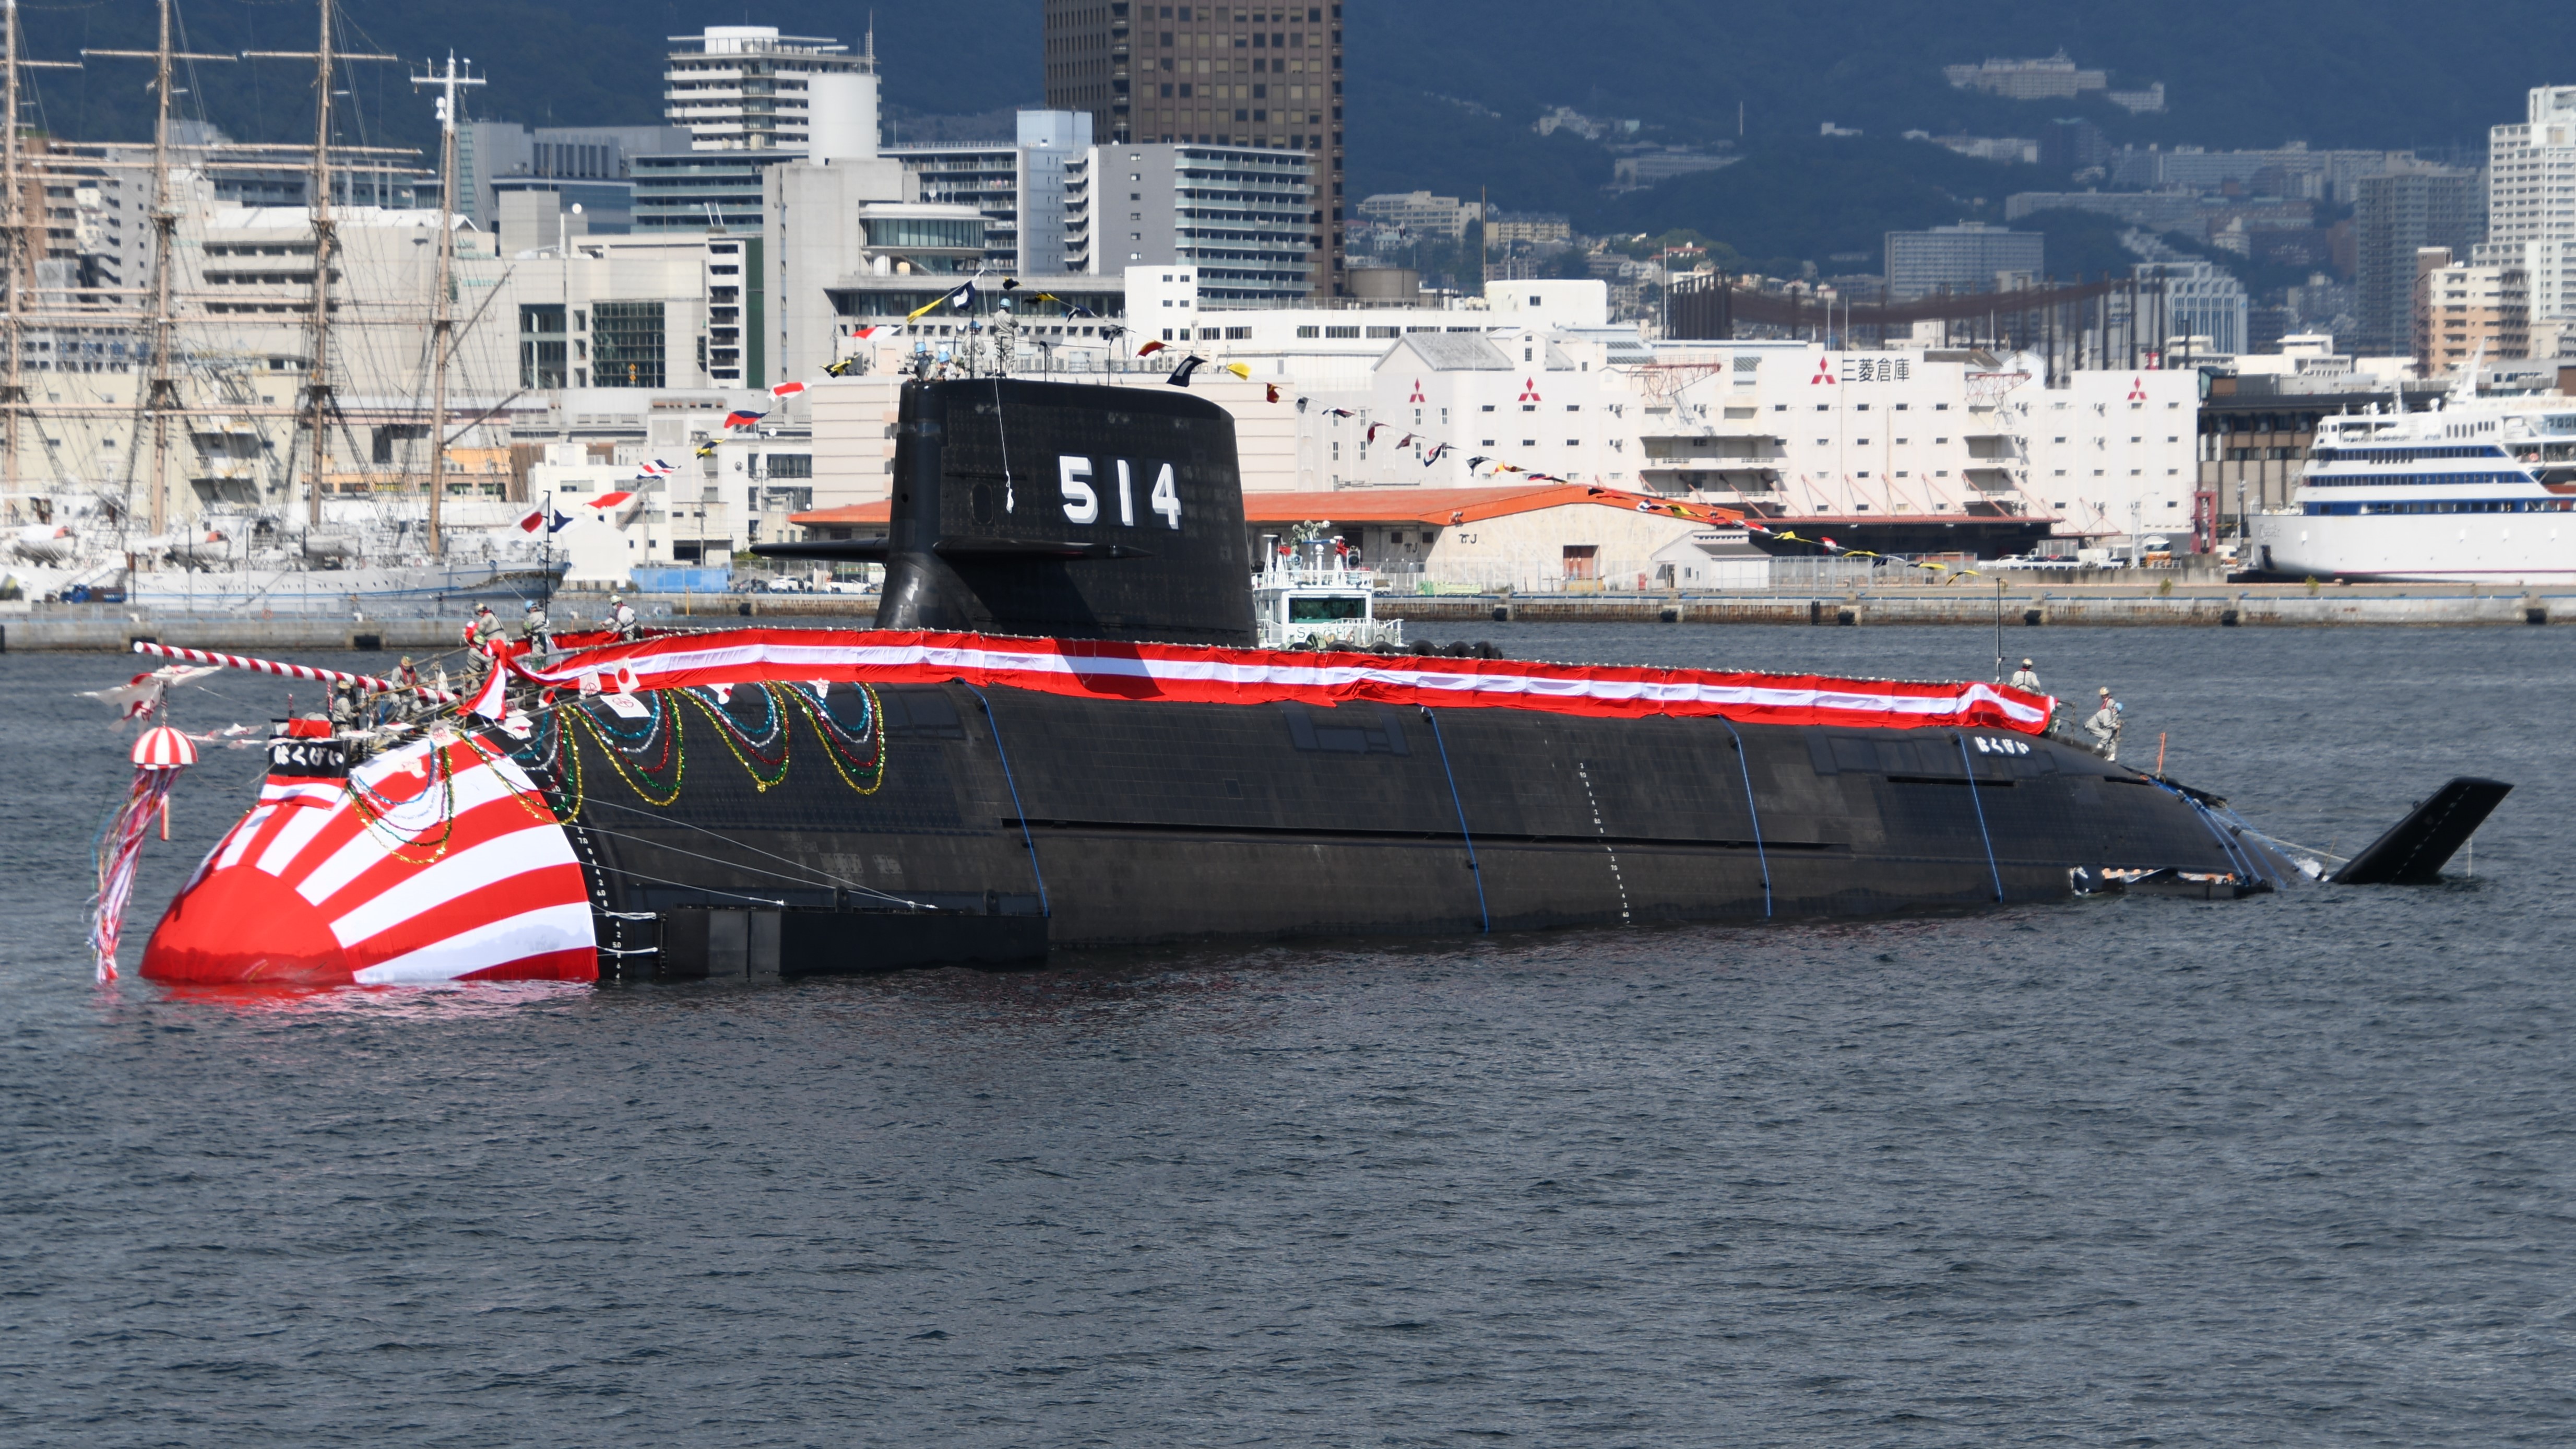 Japonia ma pierwszy na świecie okręt podwodny zasilany bateriami litowo-jonowymi - wart 5,4 mld dolarów i zdolny do przenoszenia nawet 30 pocisków